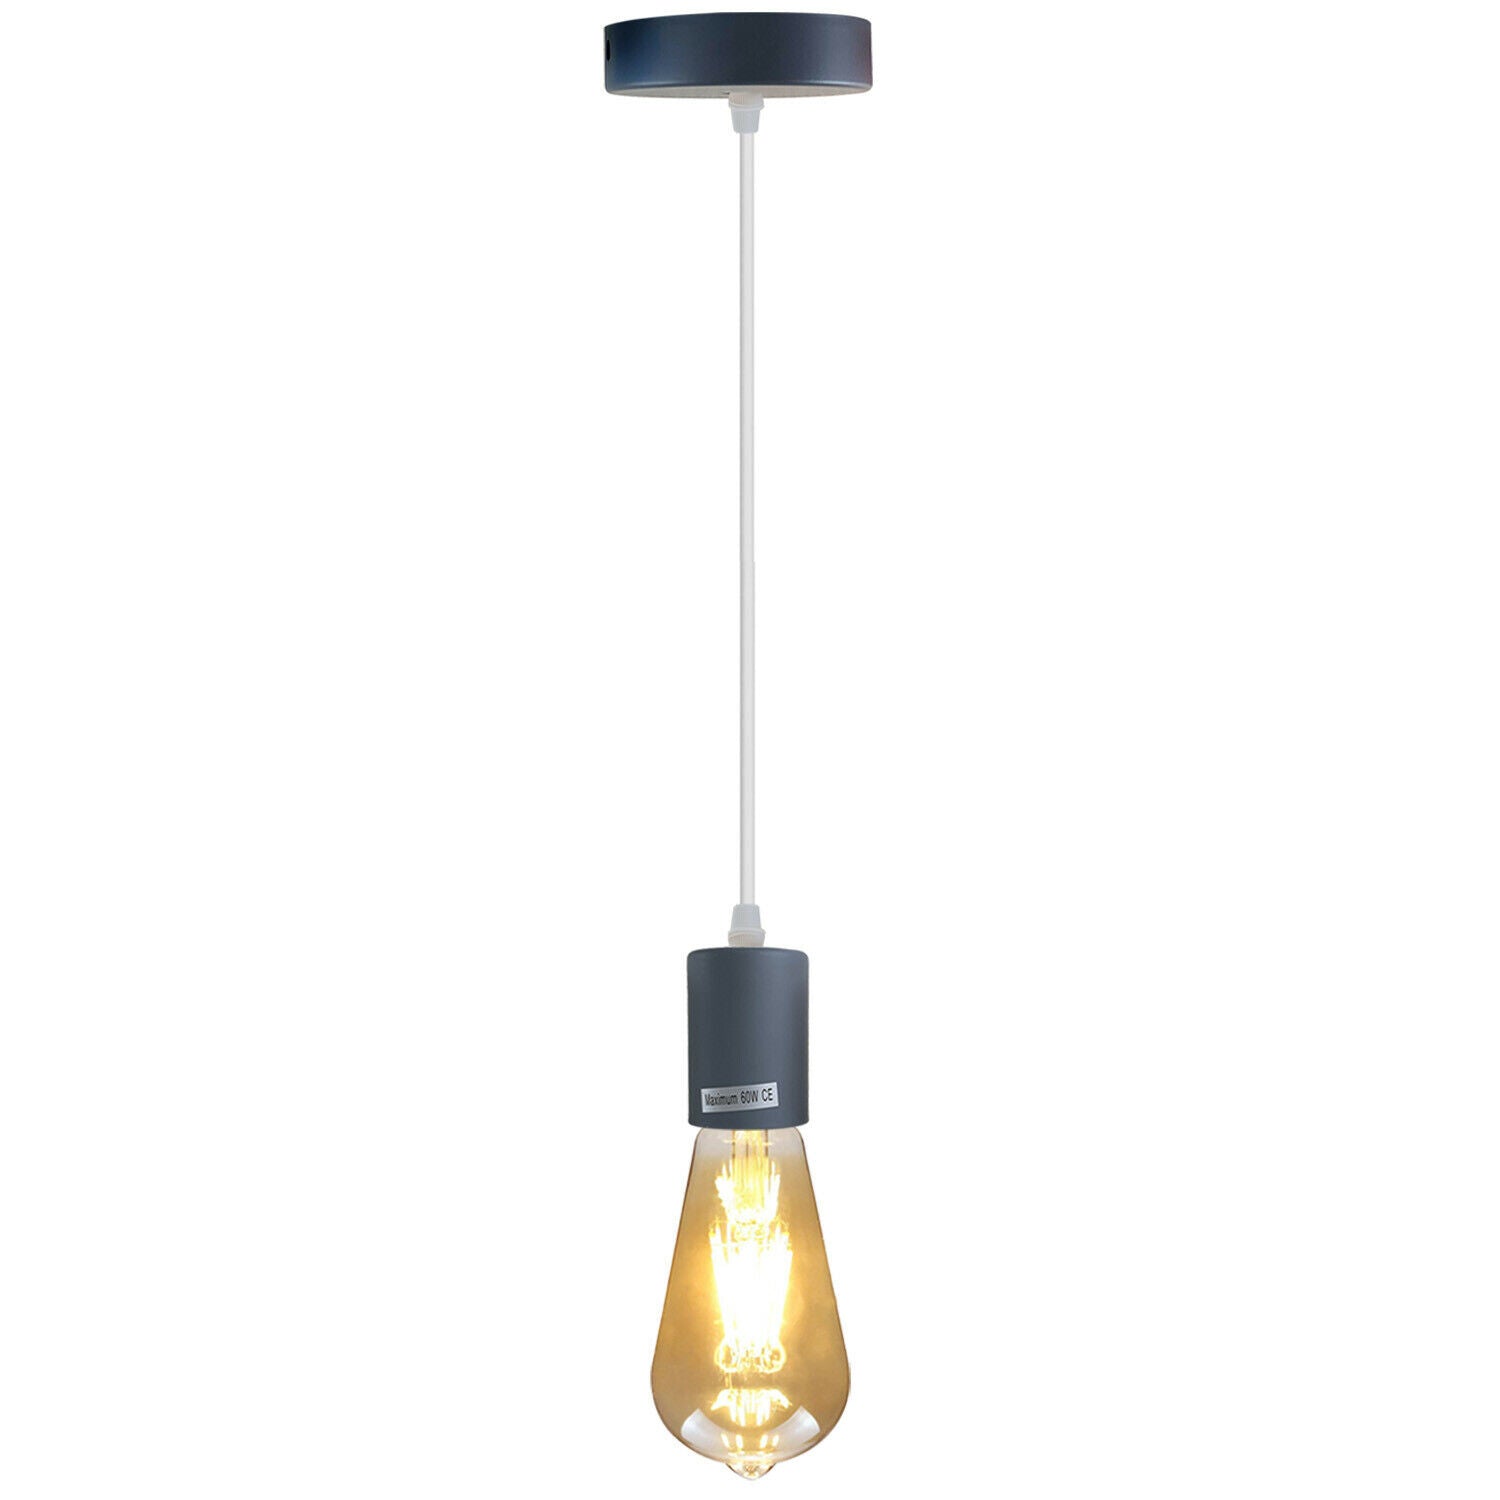 Grey E27 Ceiling Light Fitting Industrial Pendant Lamp Bulb Holder~1674 - electricalsone UK Ltd